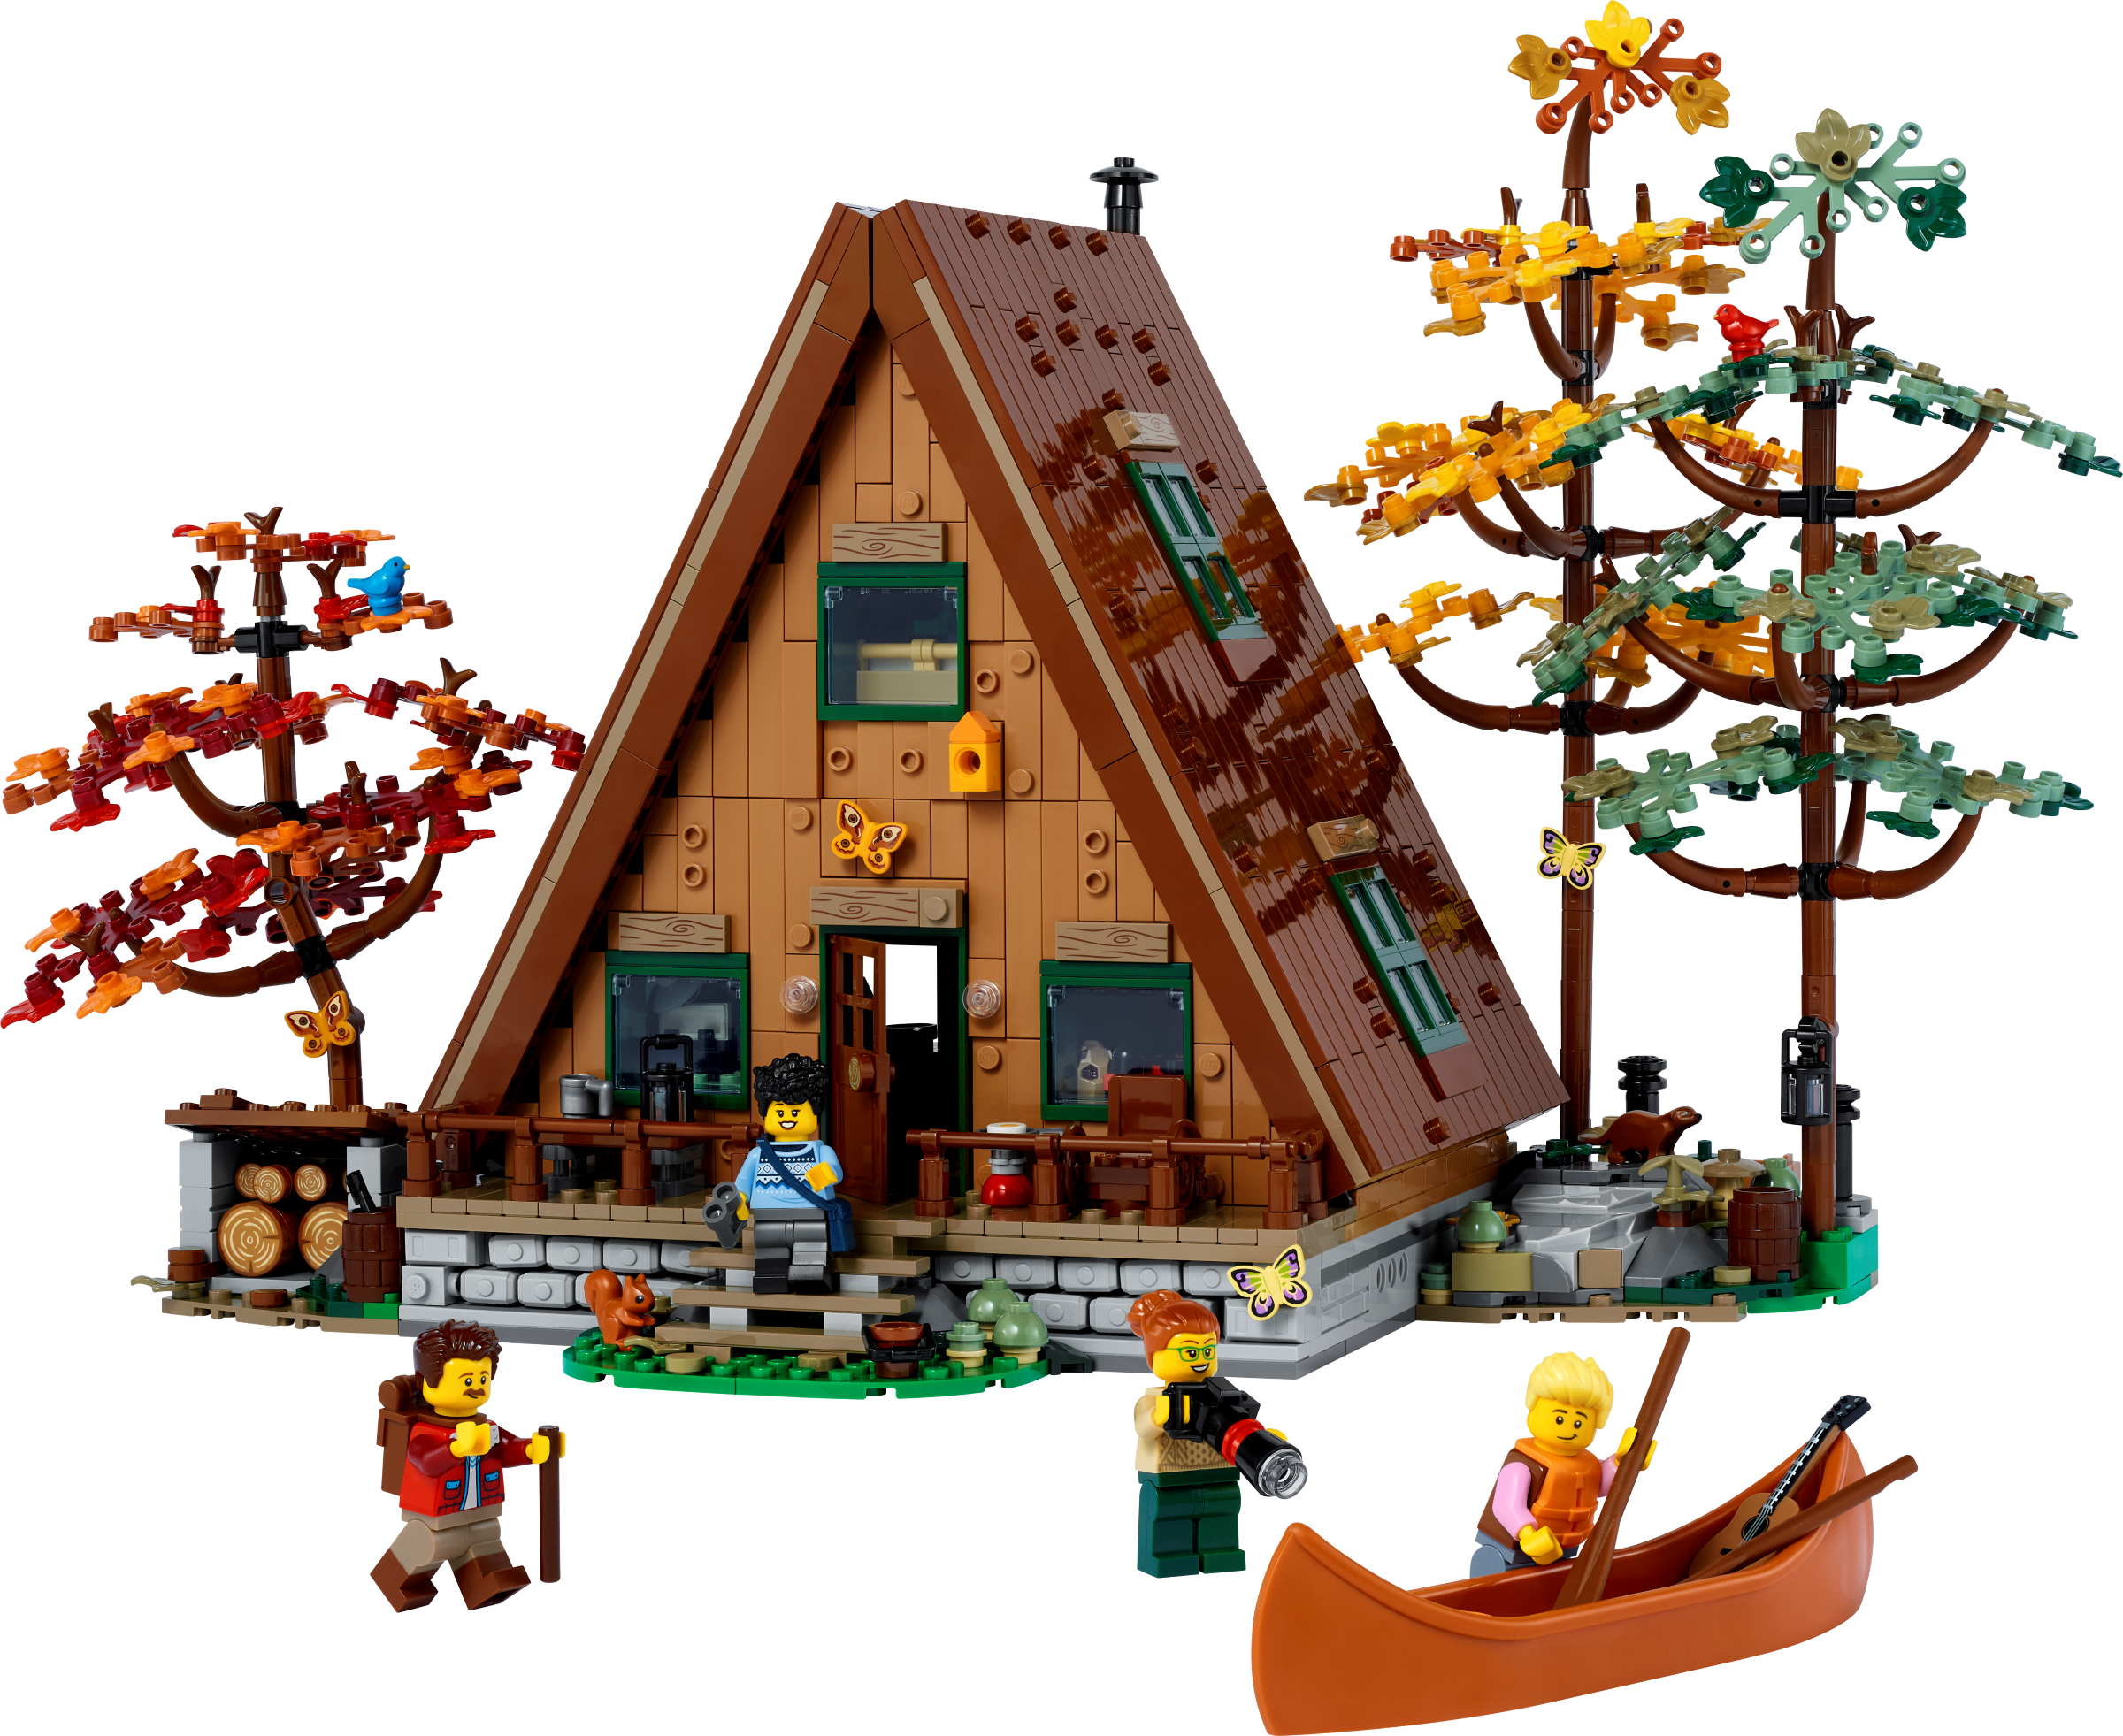 spurv Rough sleep Gå tilbage A-Frame Cabin 21338 | Ideas | Buy online at the Official LEGO® Shop US